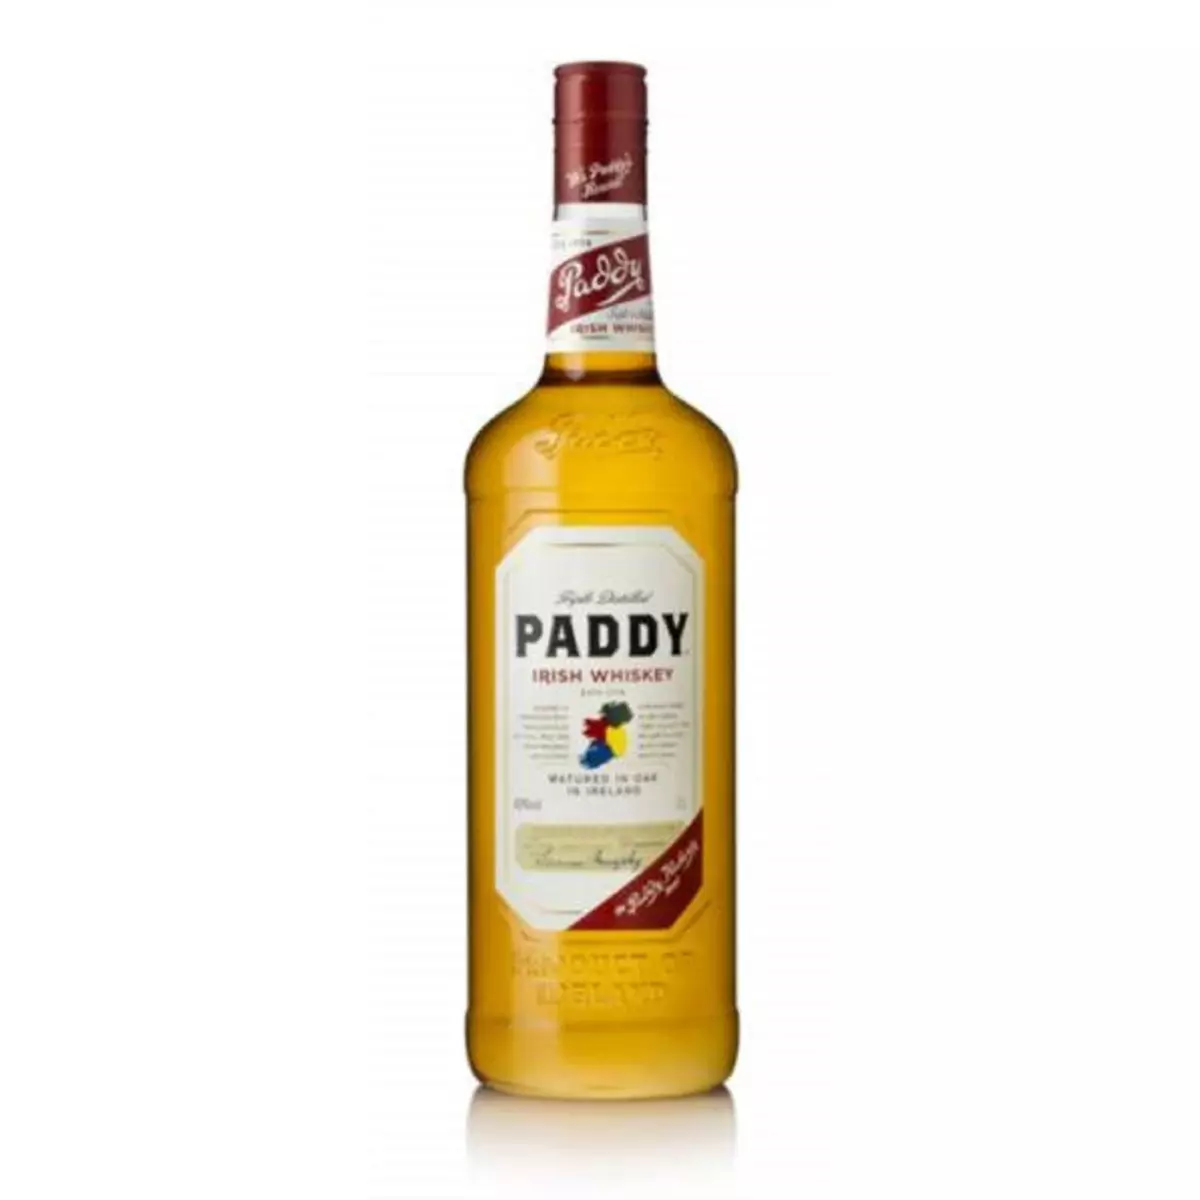 PADDY est un des plus doux de tous les Irish Whiskey ! Le fruit d’un assemblage de 3 whiskeys : le Pure Pot Still whiskey, le whiskey de grains et le whiskey de malts. Elaboré dans le comté de Cork depuis 1779, PADDY est issu d’une triple distillation en alambic à repasse et vieillit 3 ans en fûts de chêne. 1l